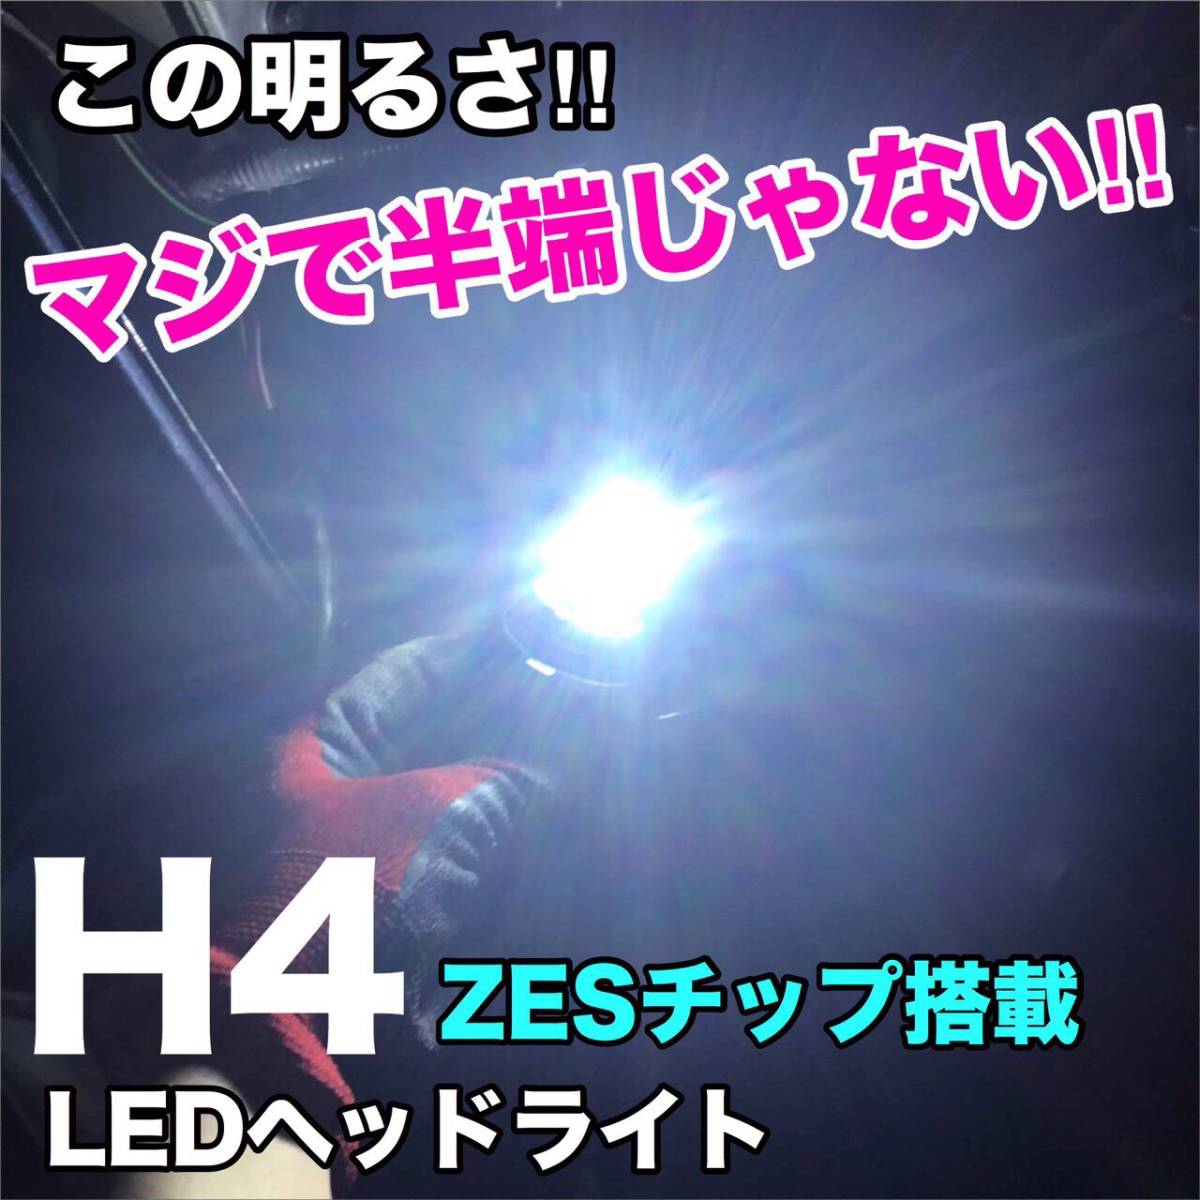 S320系 ハイゼット カーゴ クルーズ系 LED ルームランプ ウェッジ球セット T10 COB全面発光 バックランプ リバースランプ ヘッドライト_画像6